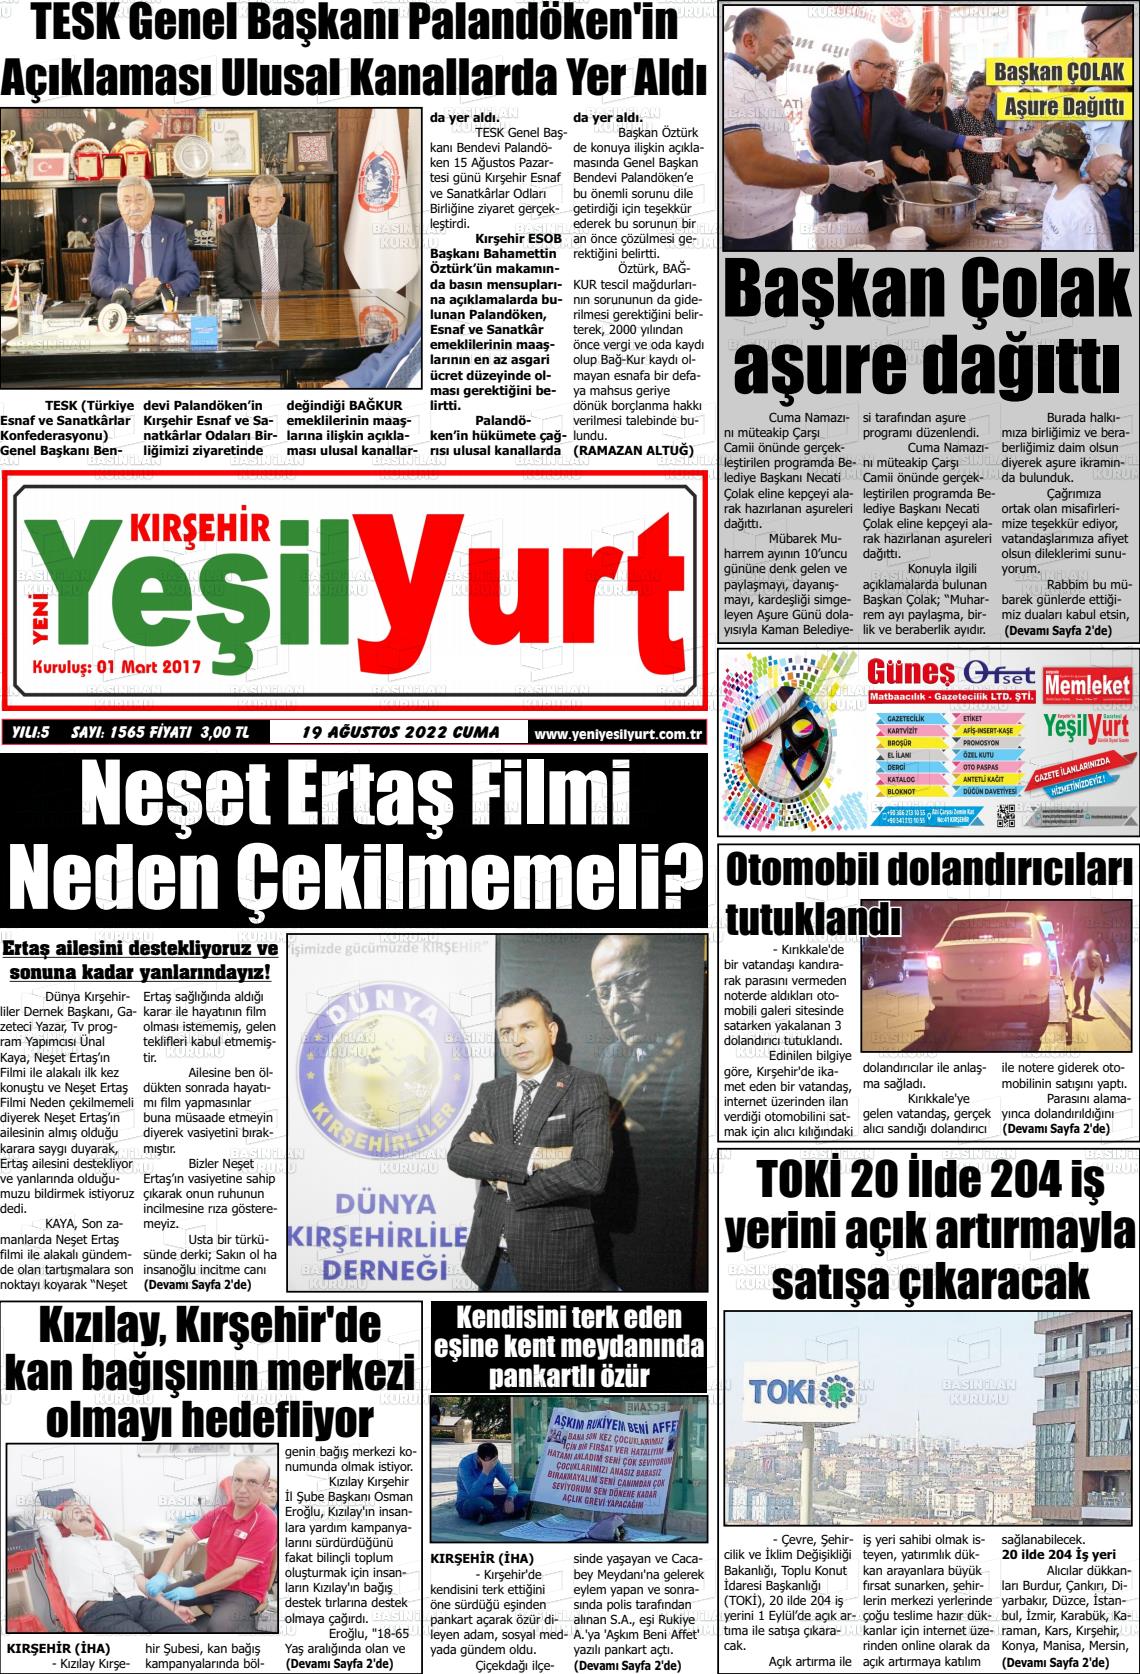 19 Ağustos 2022 Yeni Yeşilyurt Gazete Manşeti